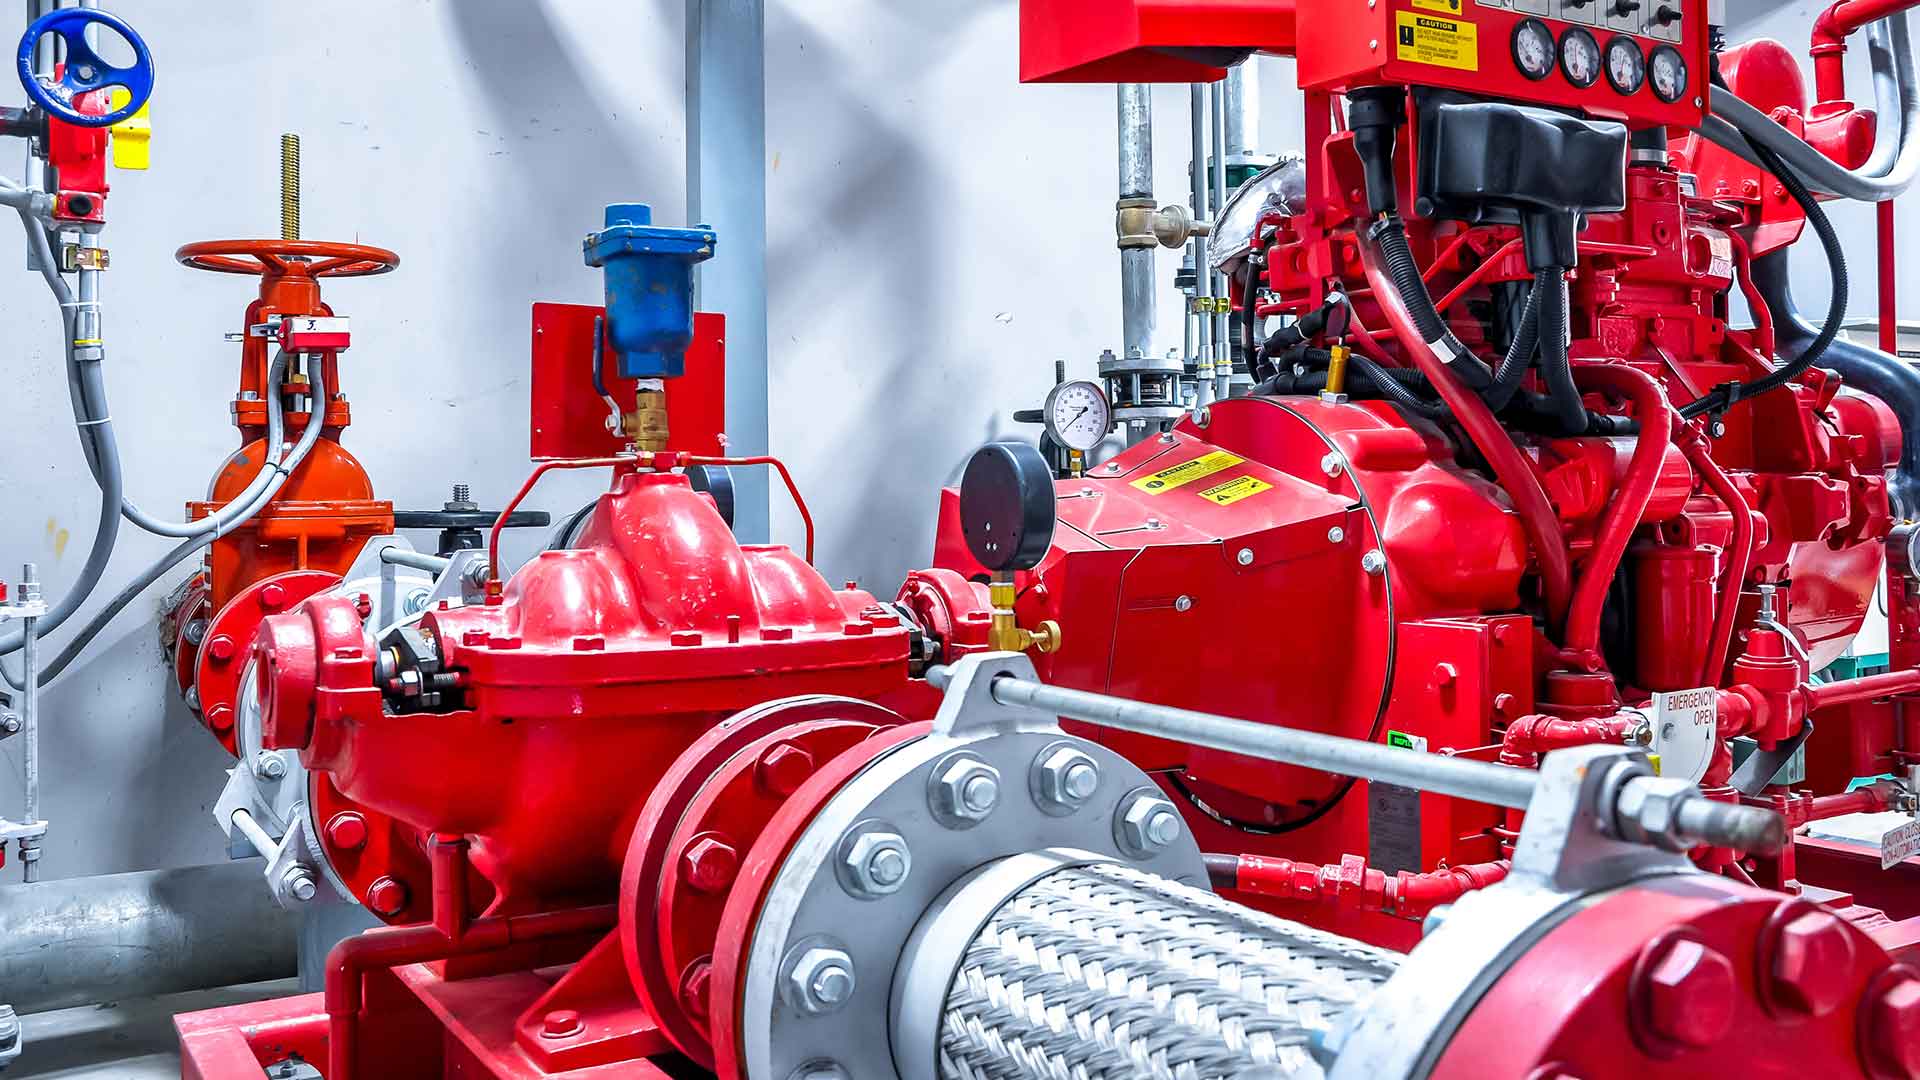 Emergency Generators or Diesel Engine Driven Pumps